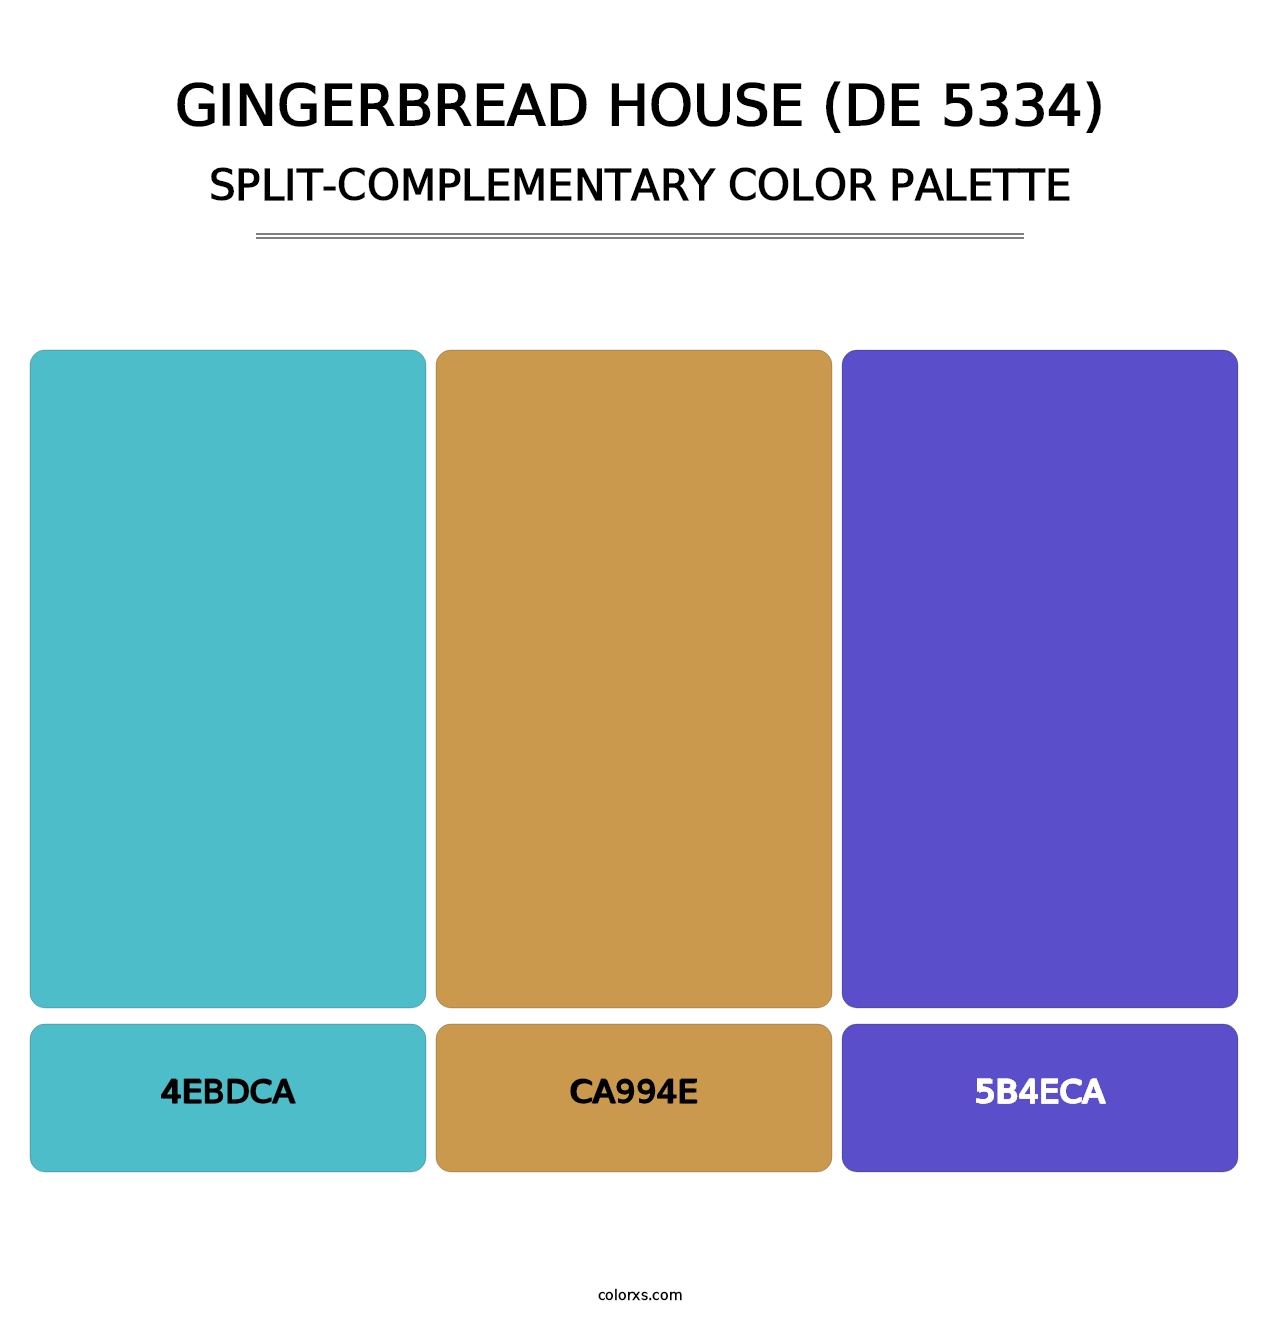 Gingerbread House (DE 5334) - Split-Complementary Color Palette